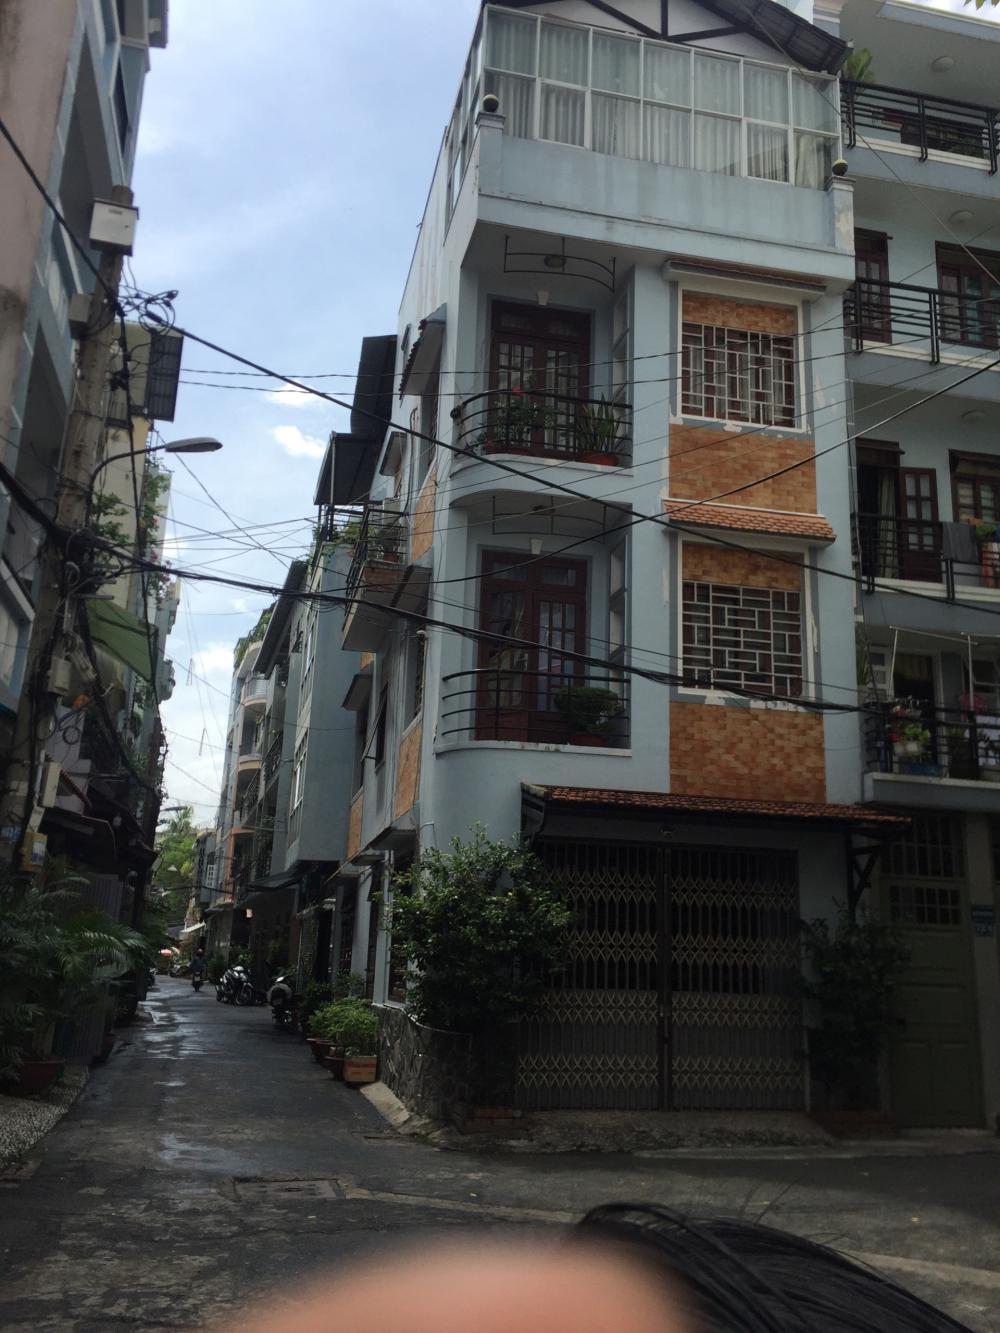 Bán nhà mặt tiền nội bộ đường Trường sơn, gần sân bay Tân Sơn Nhất, DT 7x30m, nở hậu L 16m, 3 lầu